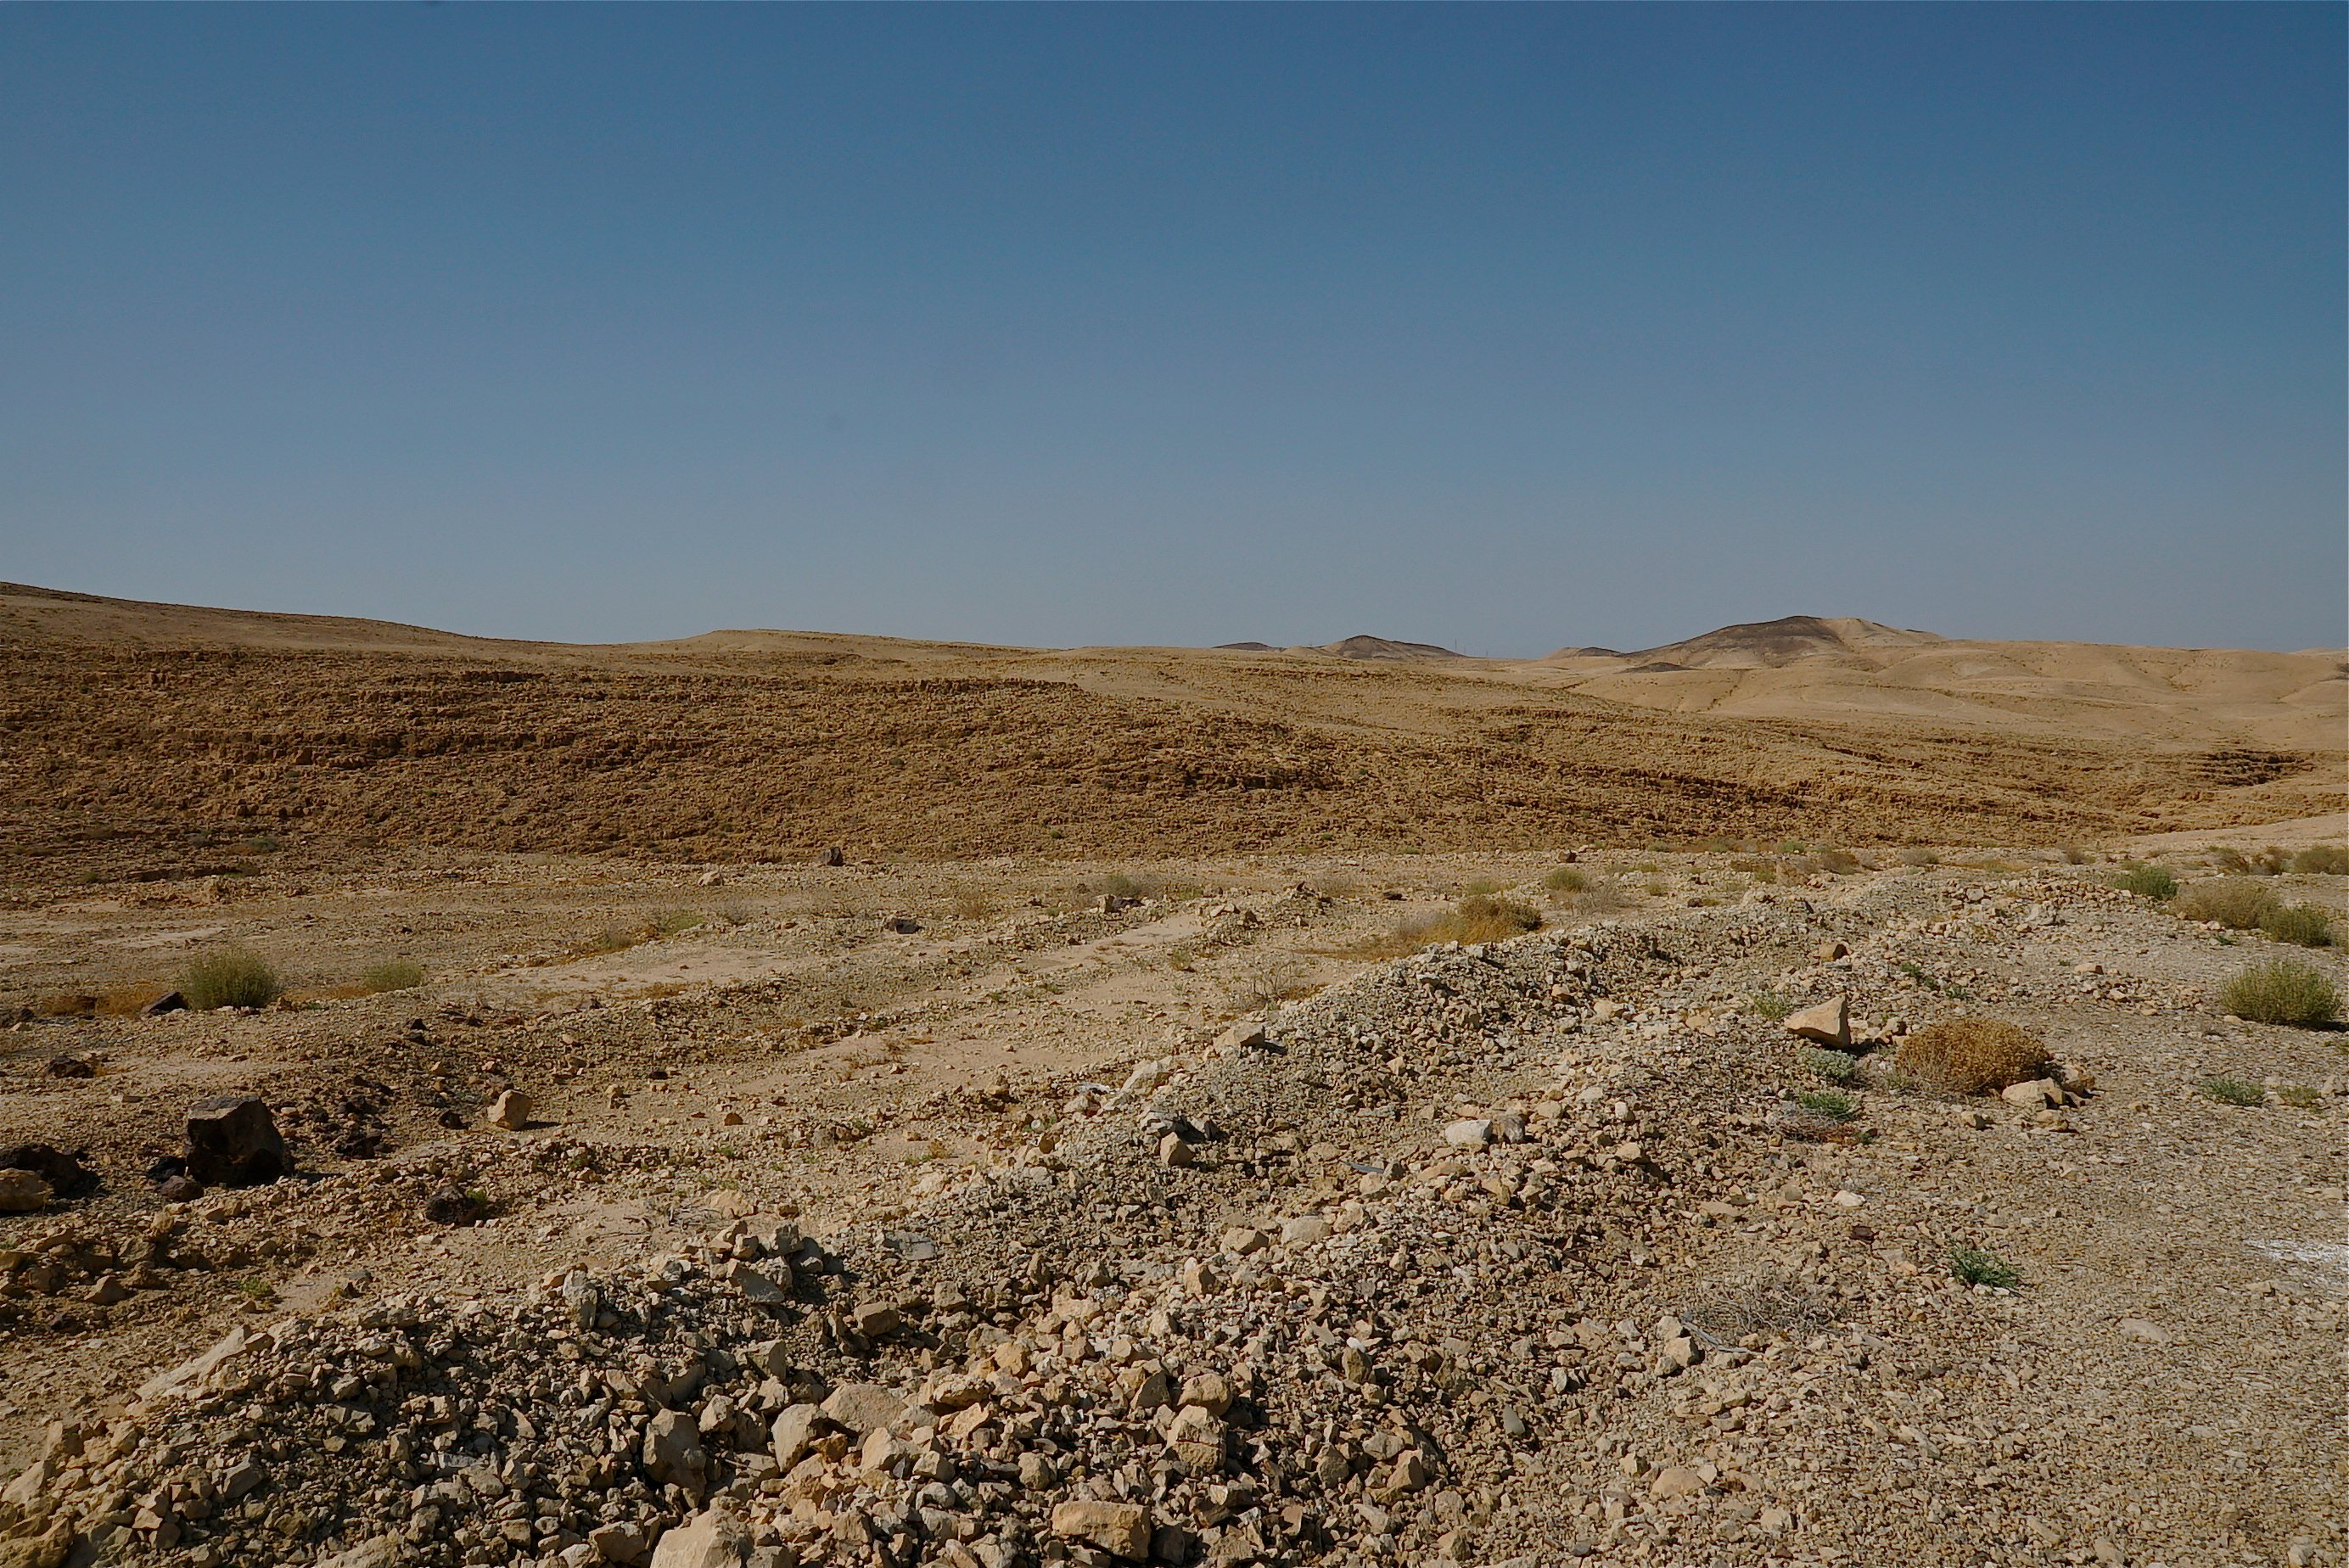 The Negev Desert